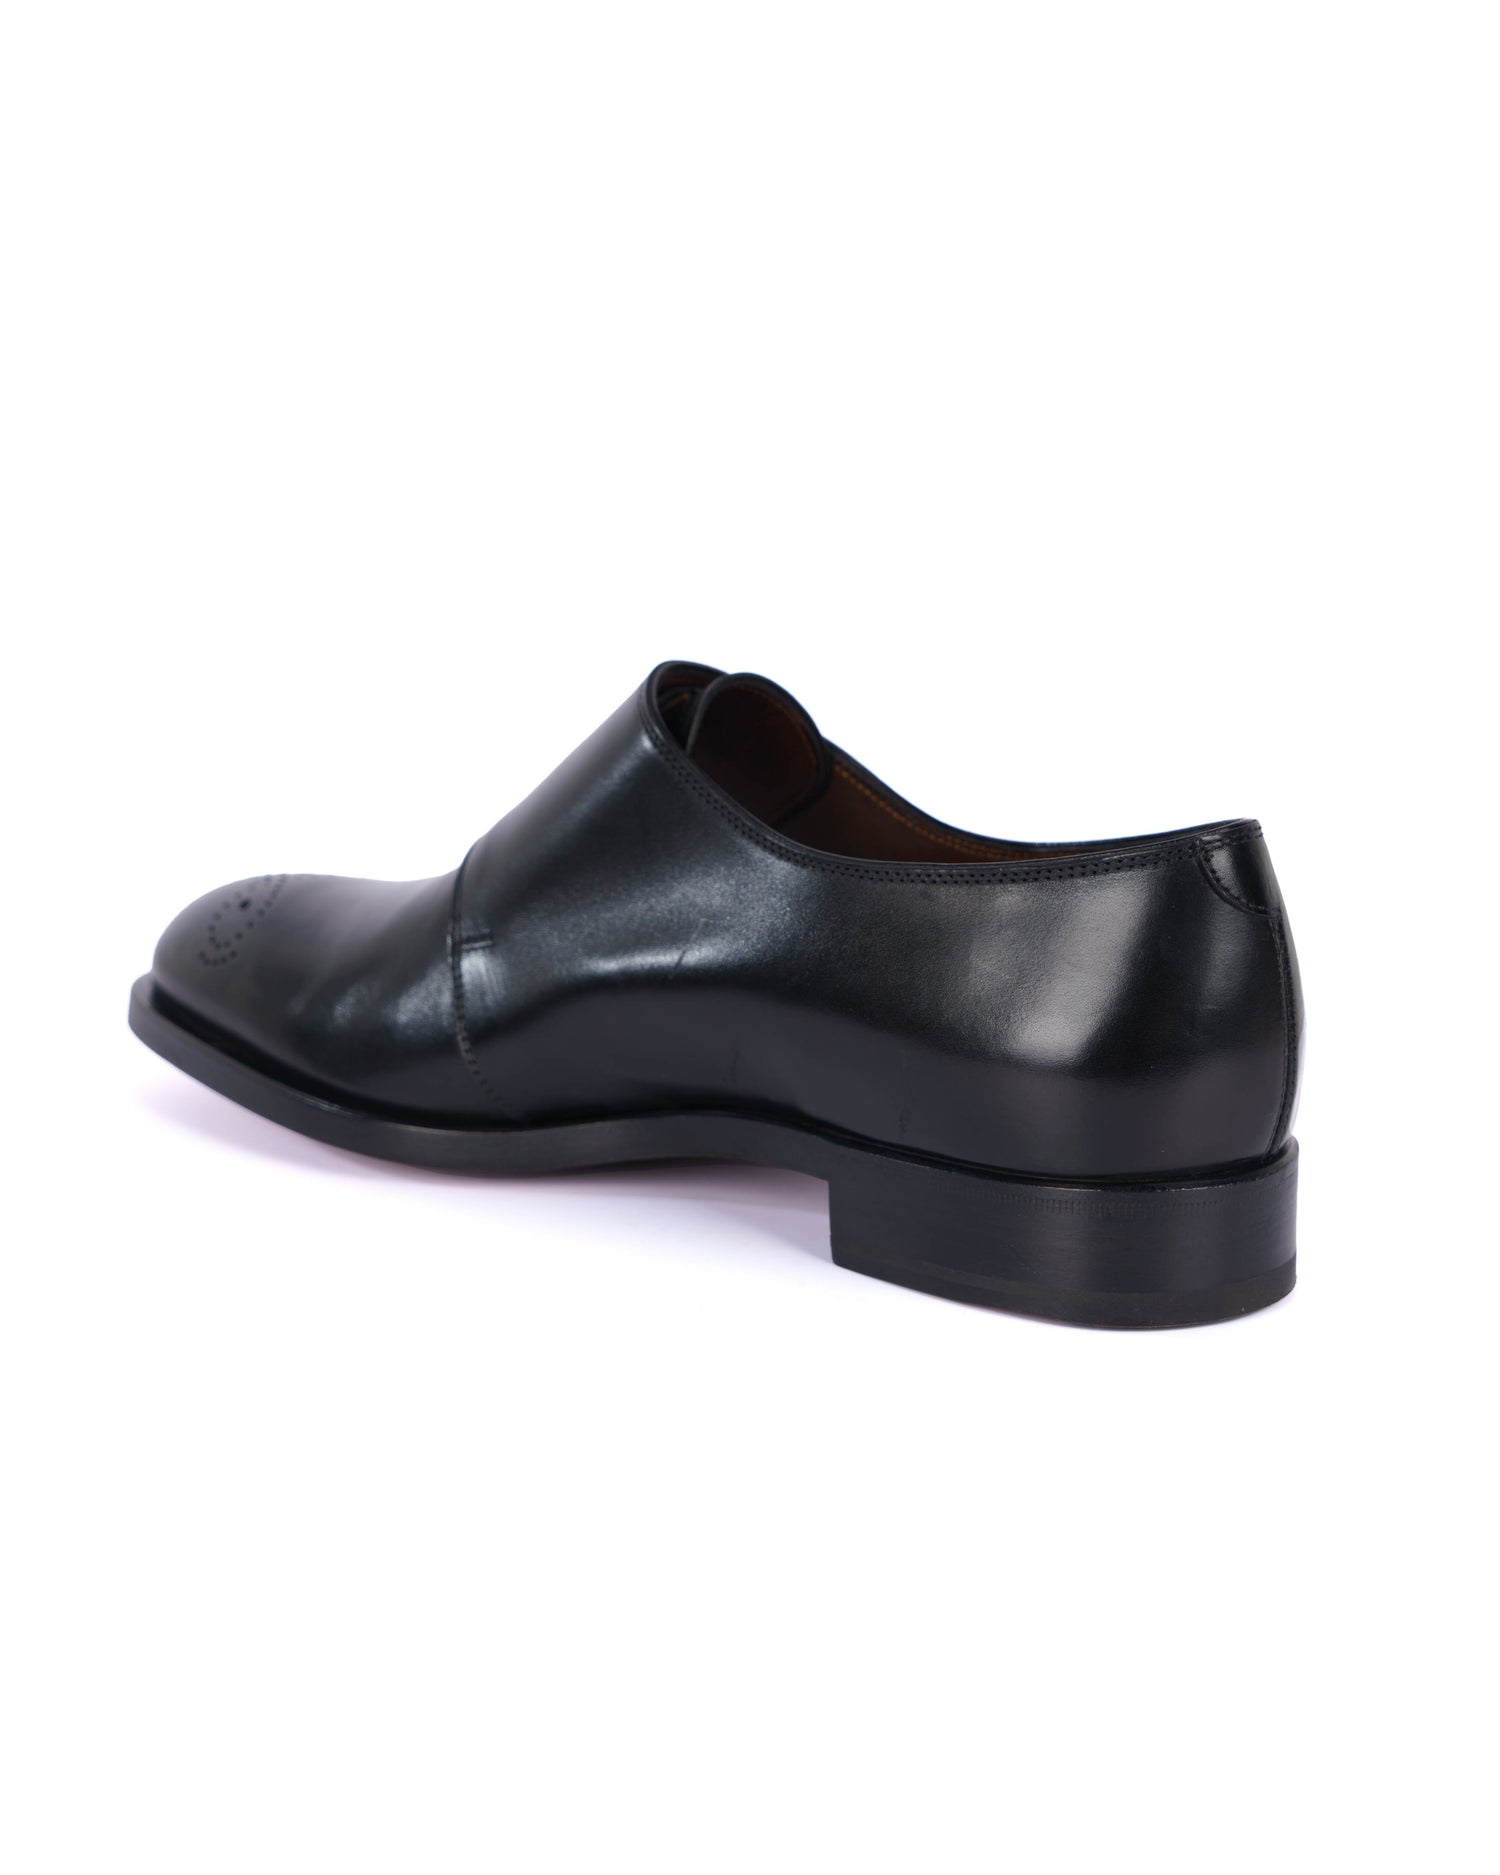 Black Monk Shoes